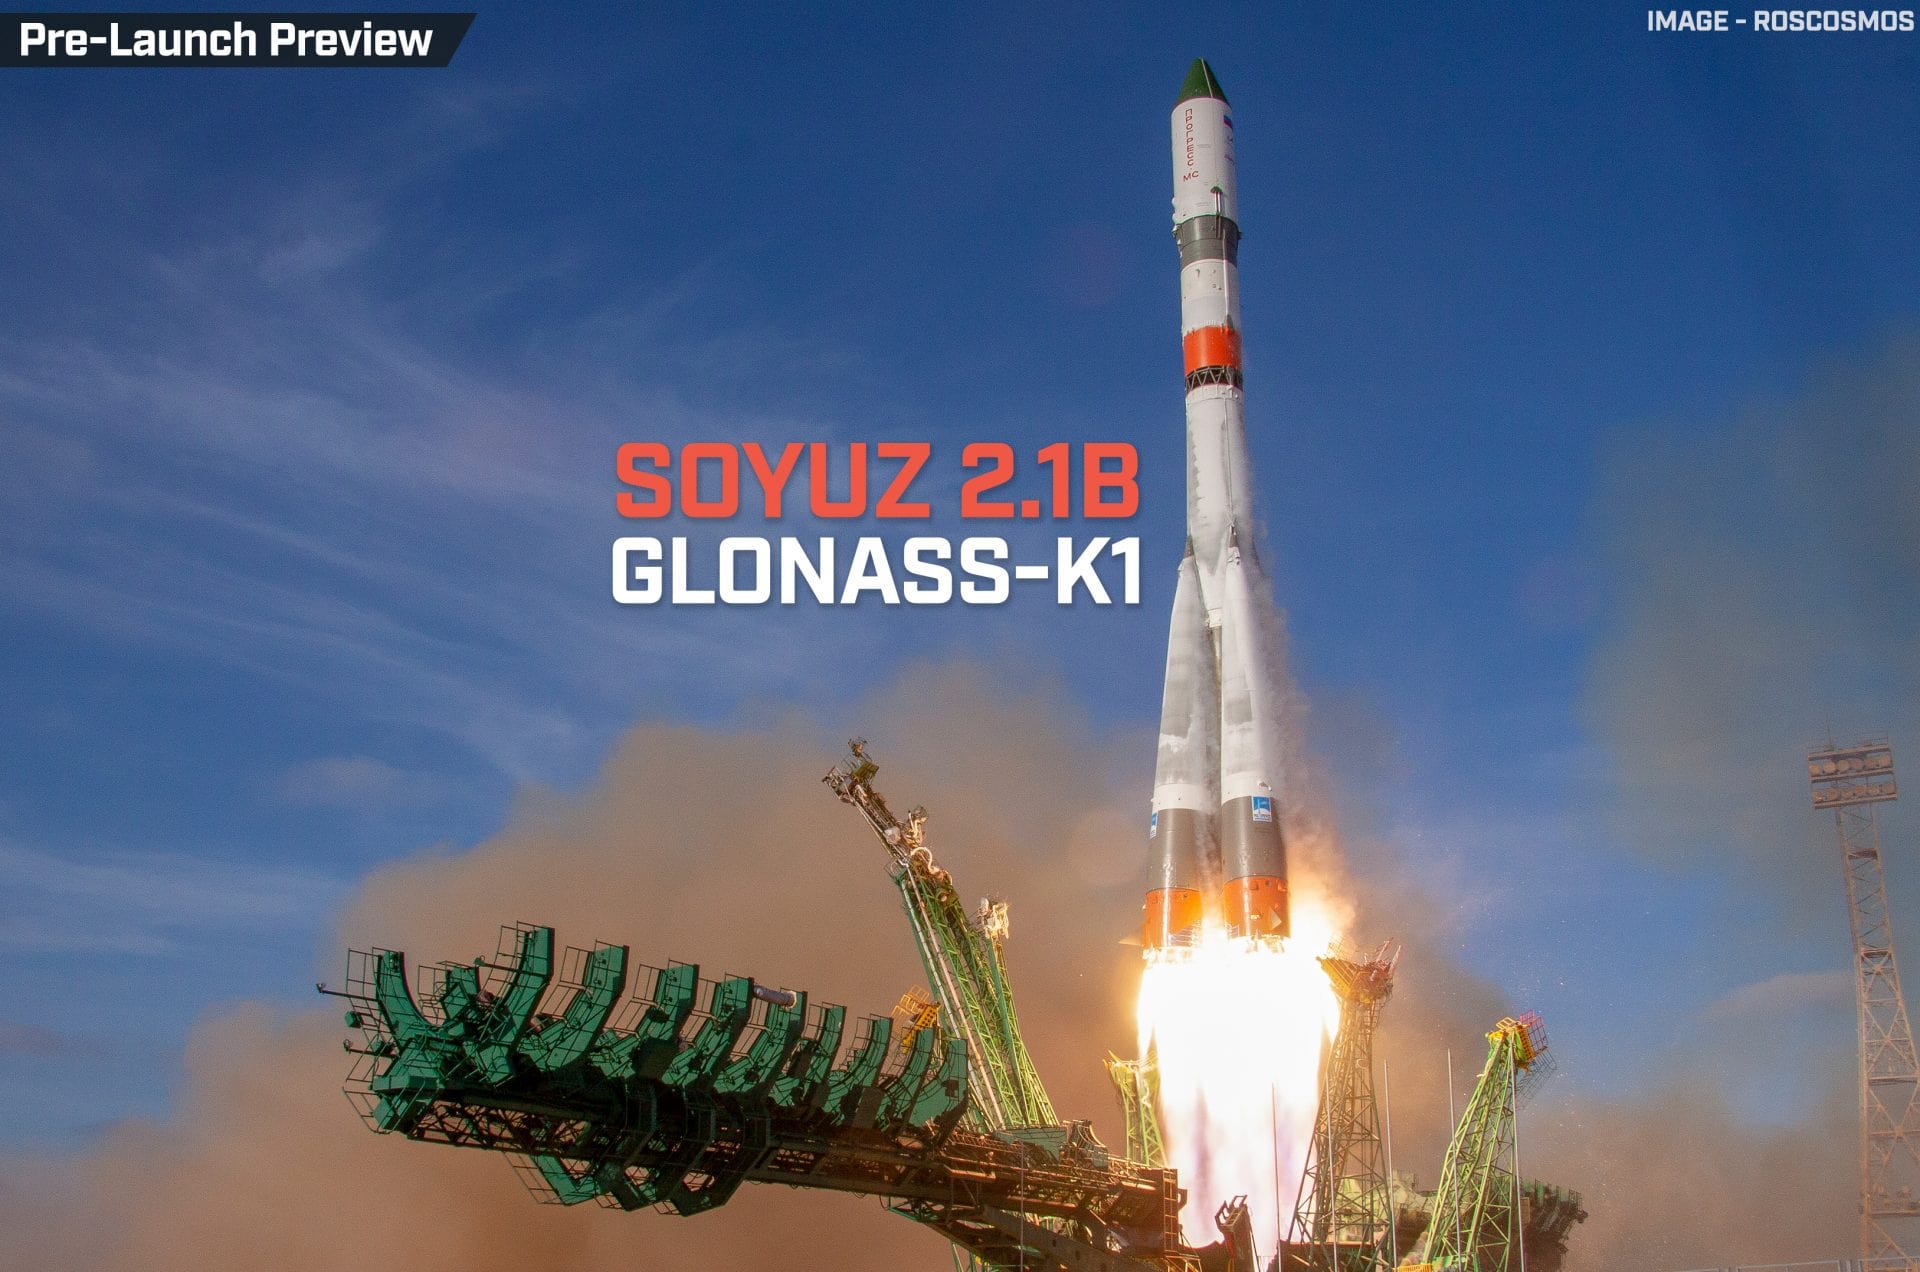 Glonass-K1 No. 17 | Soyuz 2.1b/Fregat